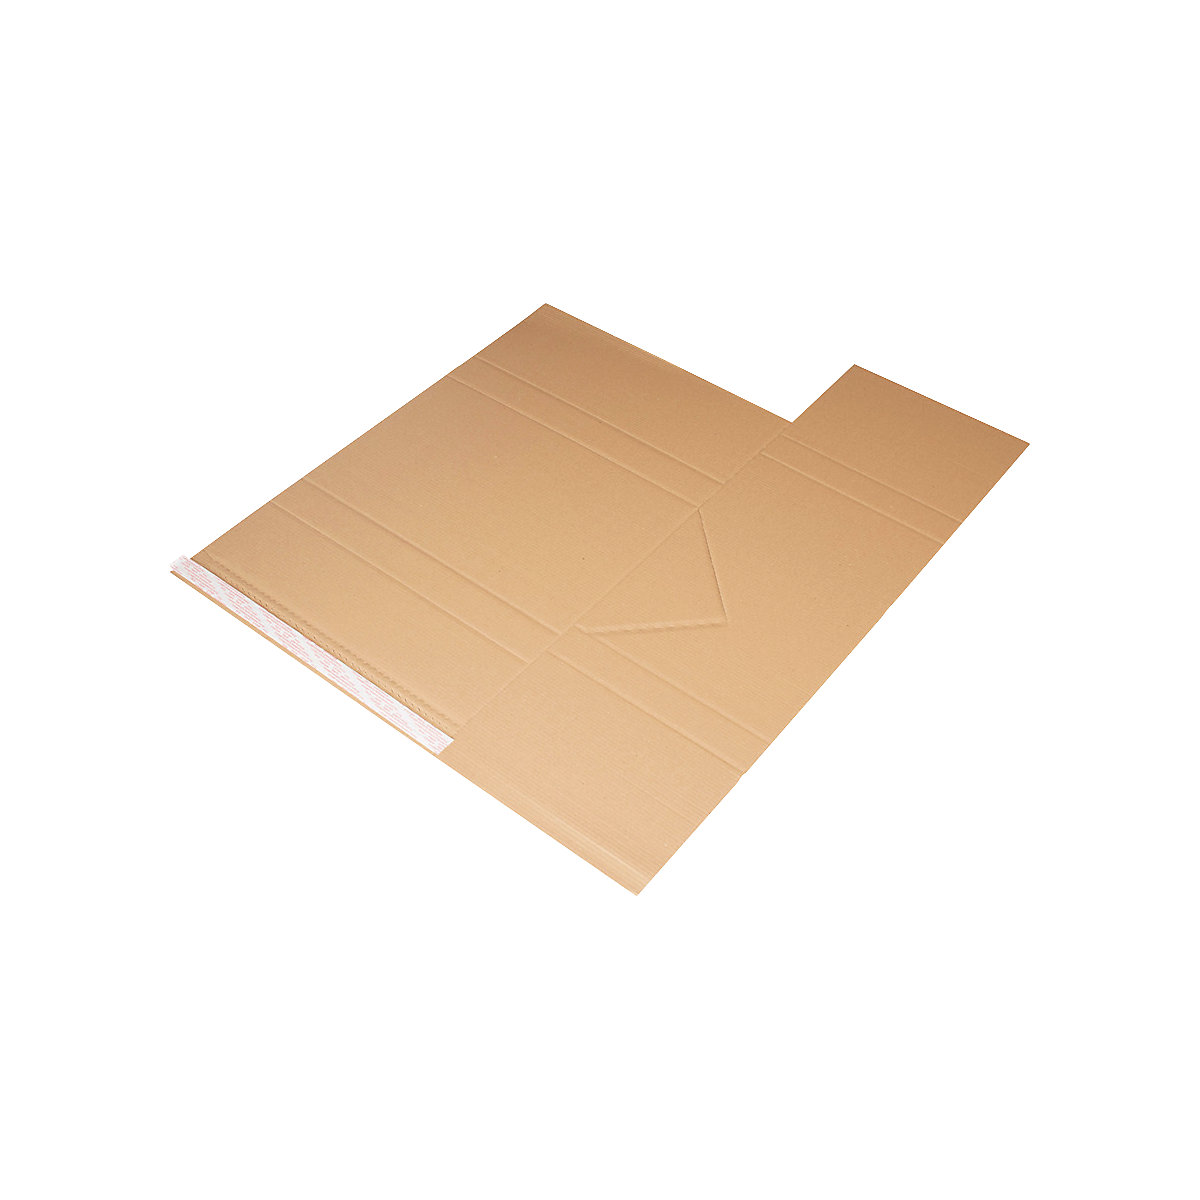 Imballaggio universale Drehfix – flow, con chiusura autoadesiva, lungh. x largh. 455 x 320 mm, a partire da 60 pz.-1